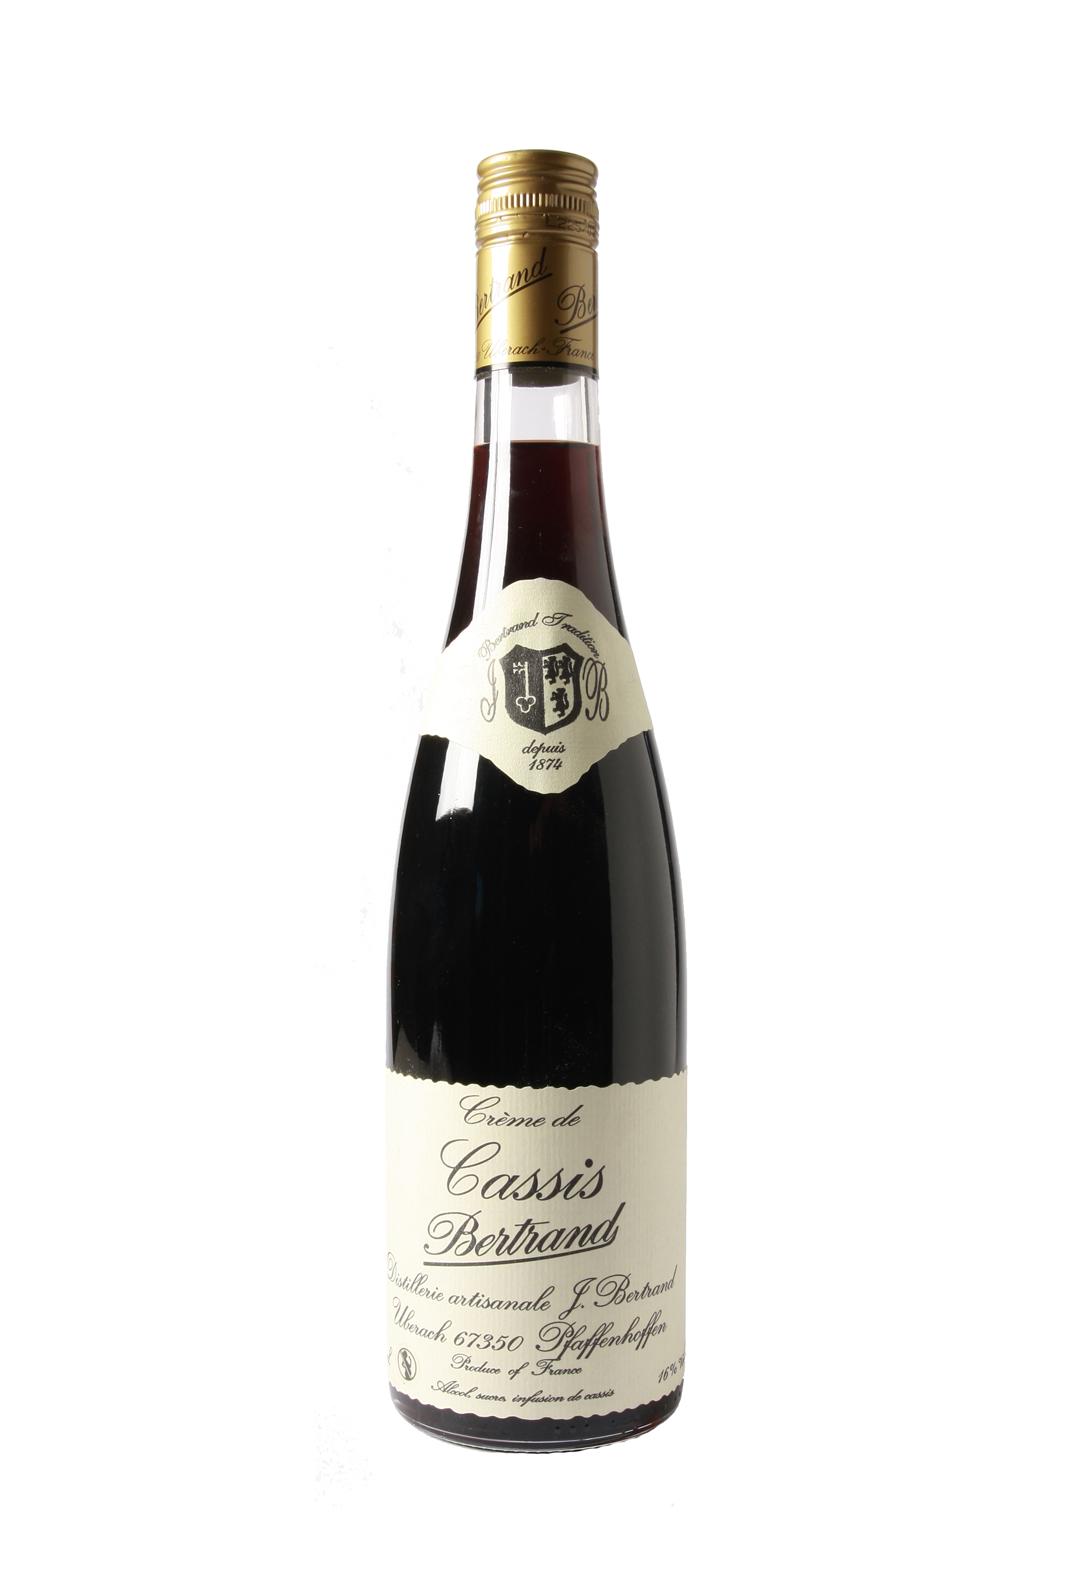 Bertrand Creme de Cassis (Blackcurrant liqueur) 16% 700ml - Fruit Liqueur - Liquor Wine Cave